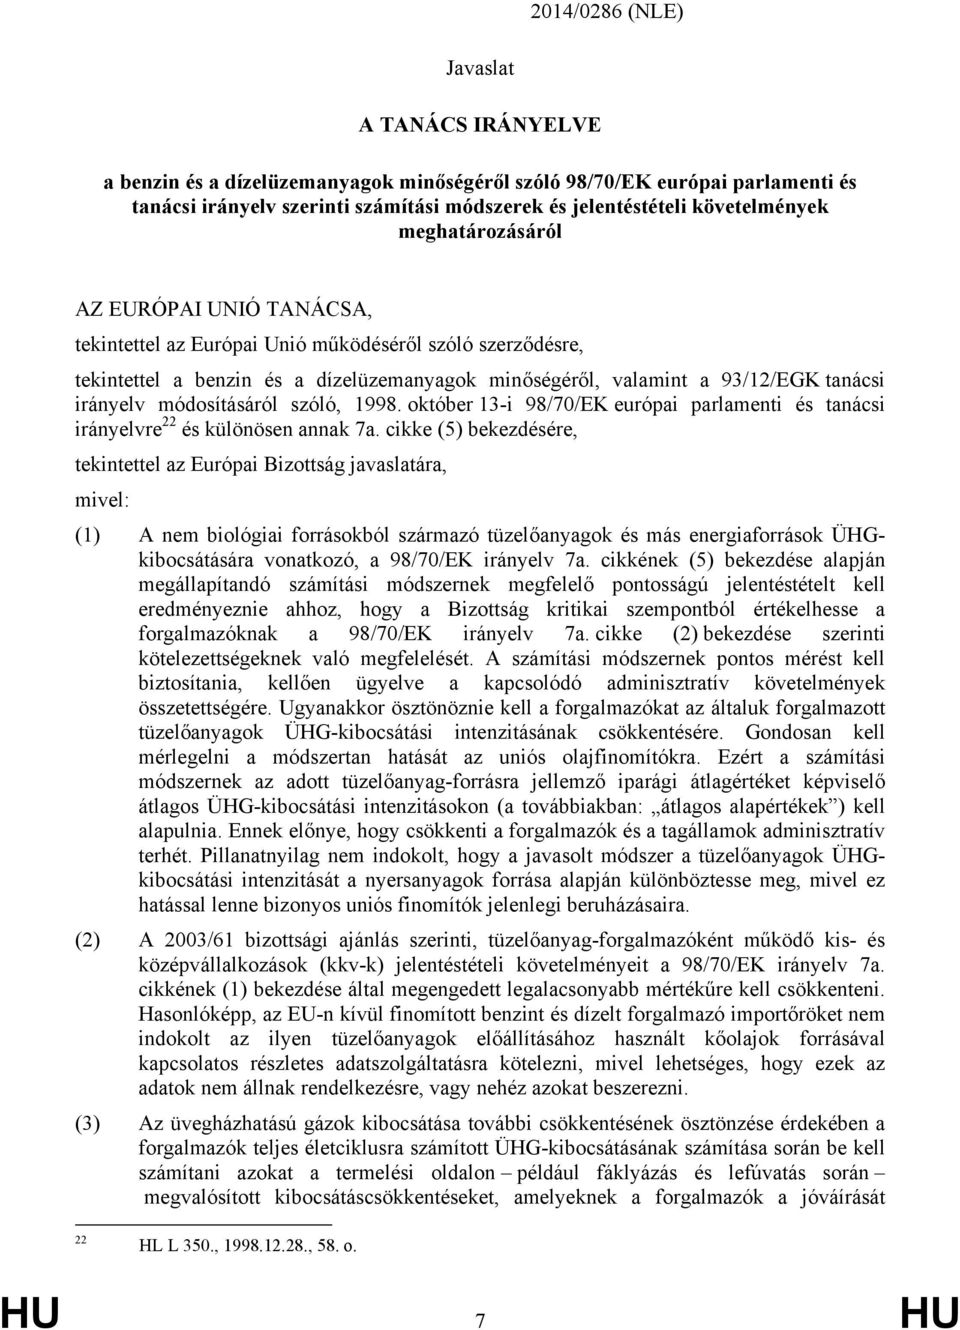 irányelv módosításáról szóló, 1998. október 13-i 98/70/EK európai parlamenti és tanácsi irányelvre 22 és különösen annak 7a.